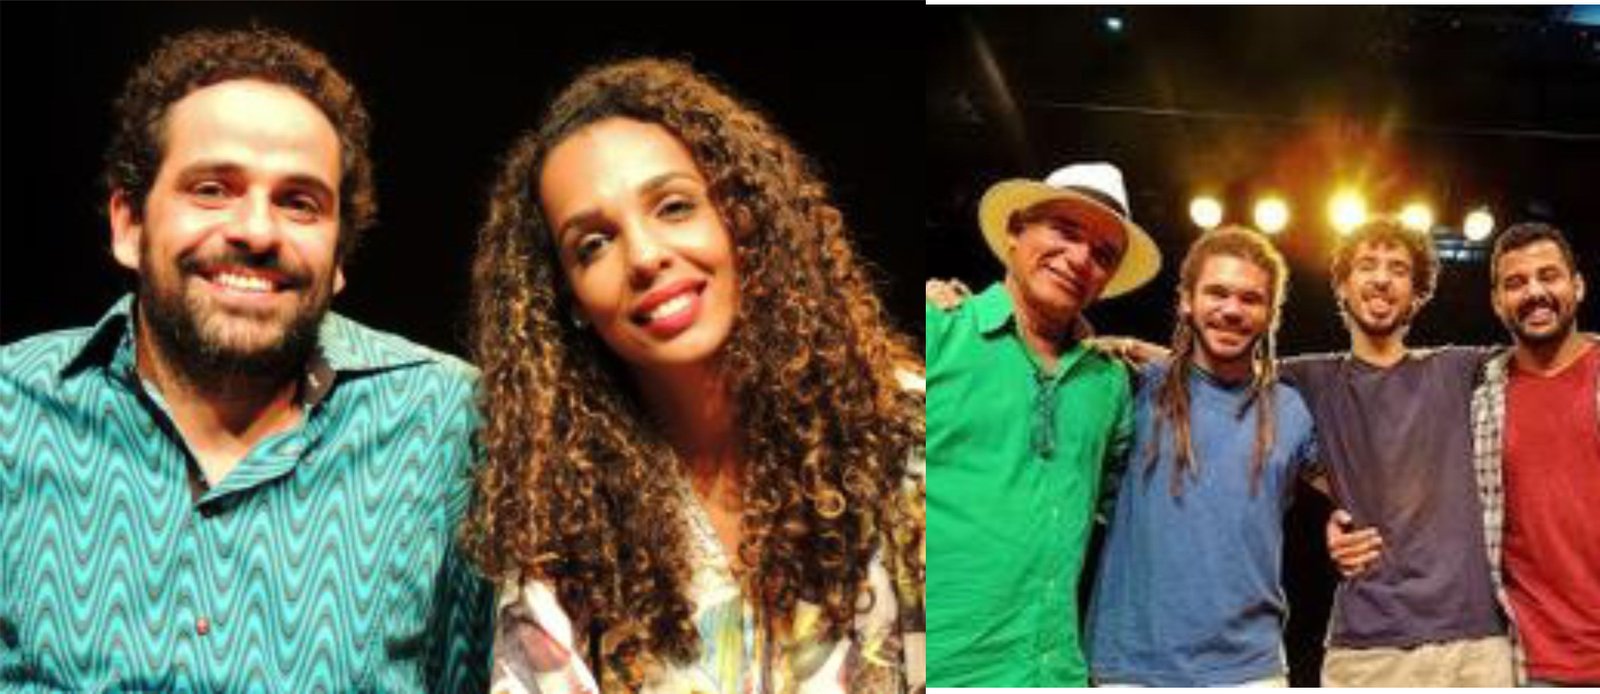 Caixa Acústica apresenta neste fim de semana “Tau Brasil e Wilson Dias” e “Giselle Couto e Dudu Nicácio”